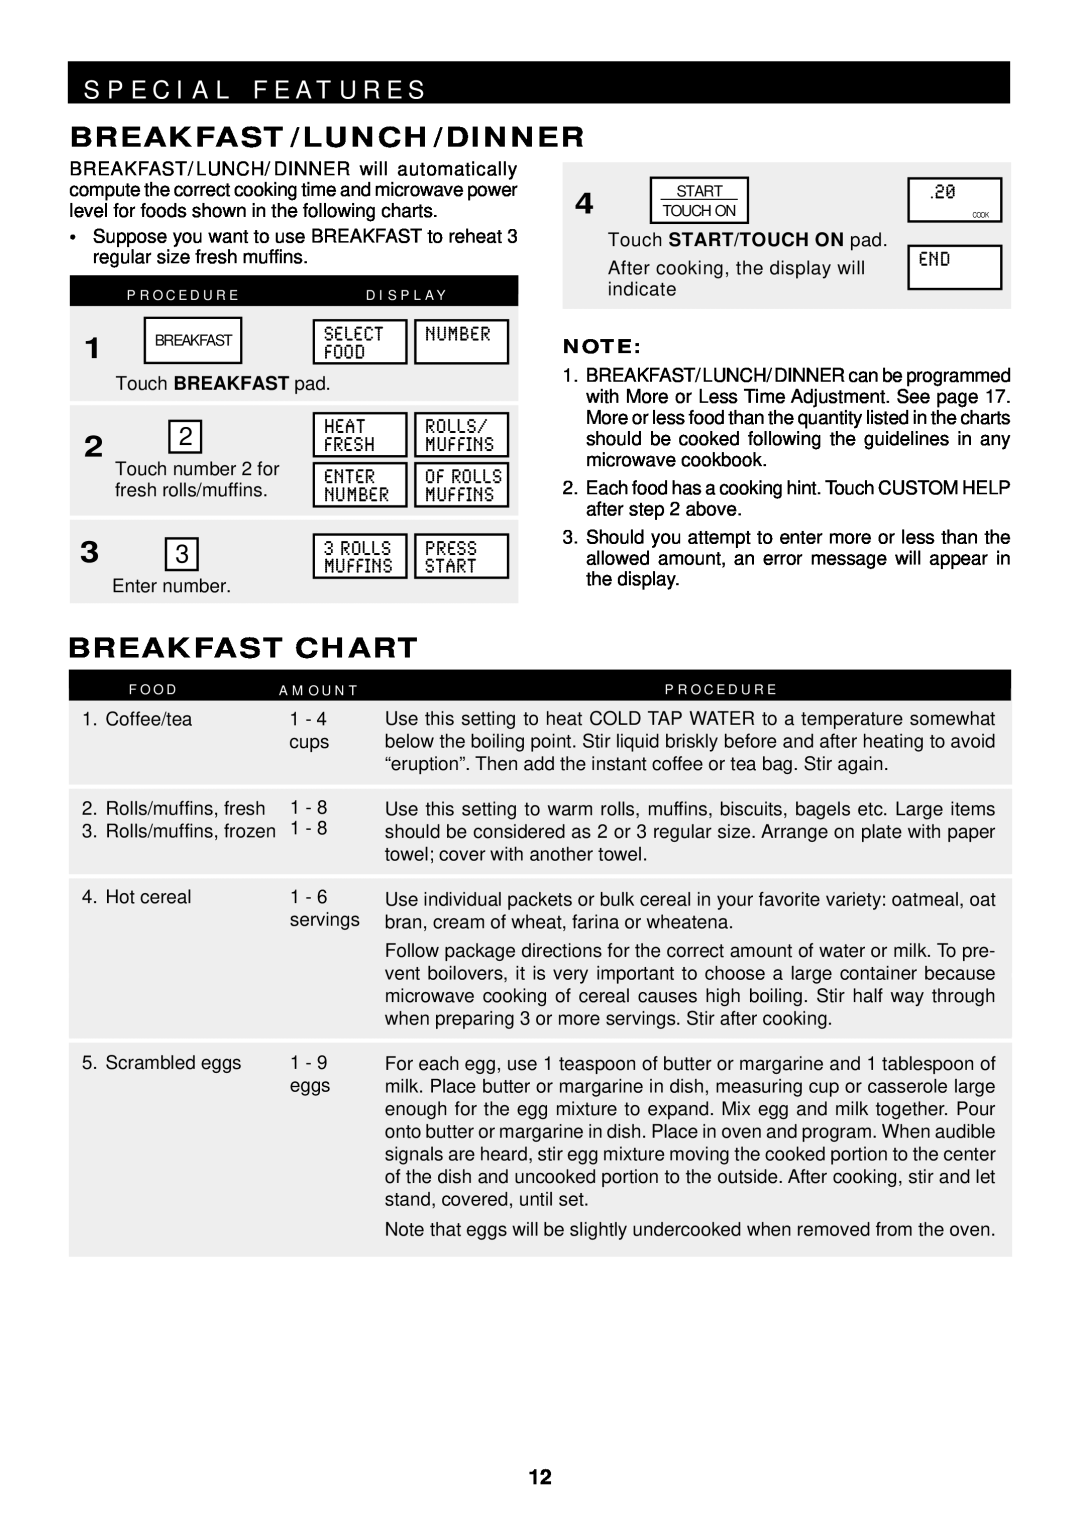 Sharp R-1600, R-1601, R-1602 operation manual S P E C I A L F E A T U R E S, Breakfast/Lunch/Dinner, Breakfast Chart 